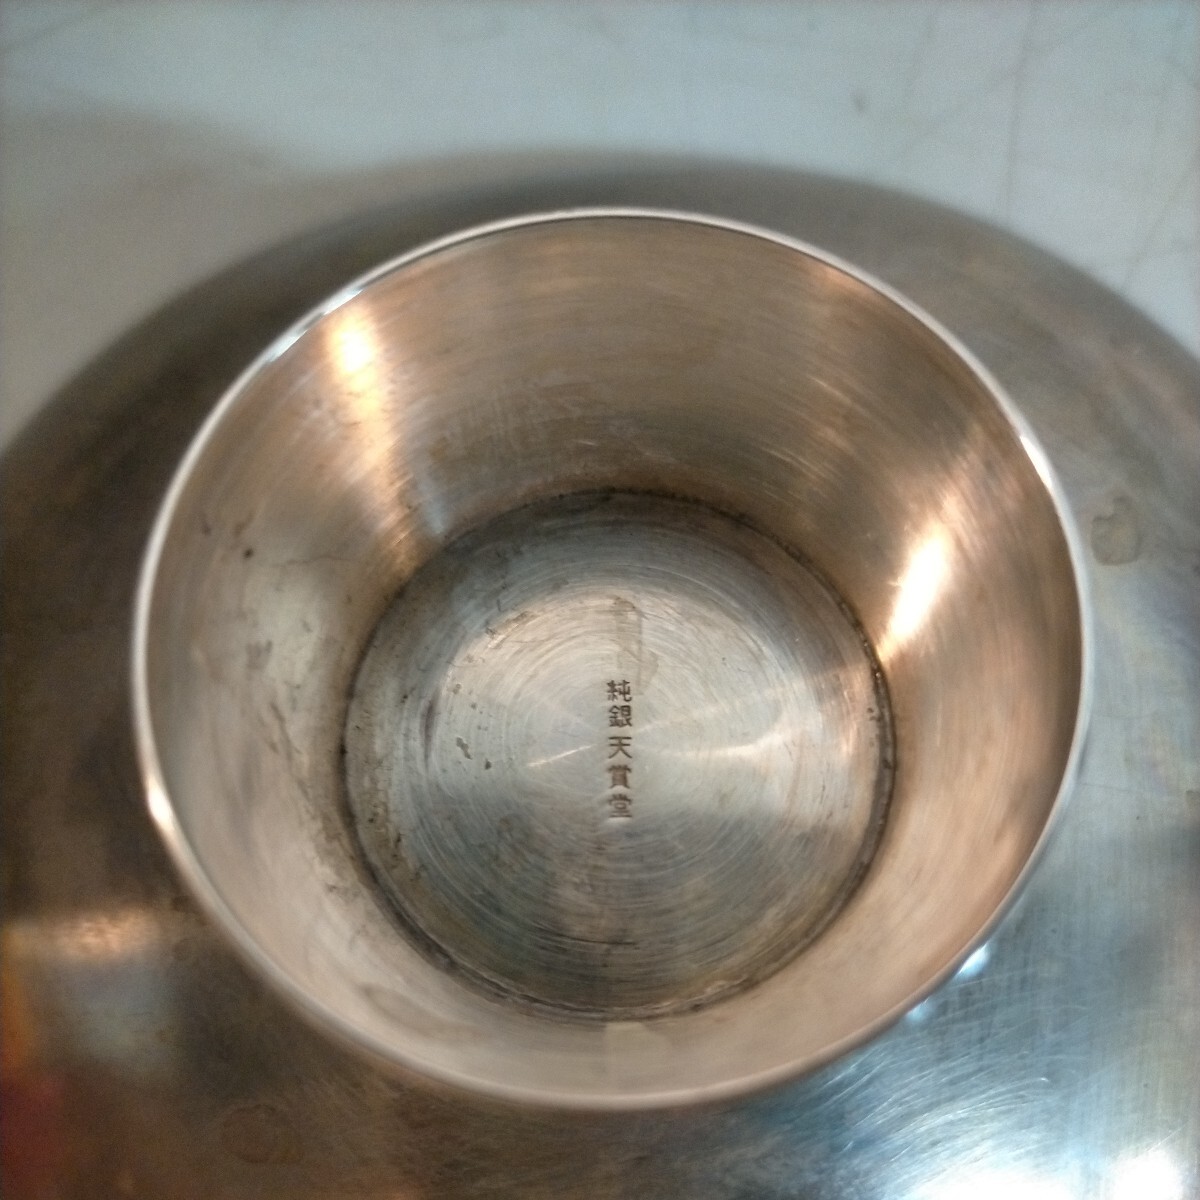  оригинальный серебряный серебряный тарелка примерно 358g Tenshodo серебряный чистый серебряный pure silver* б/у / не чистка не осмотр товар / фотография . уточните пожалуйста /NCNR